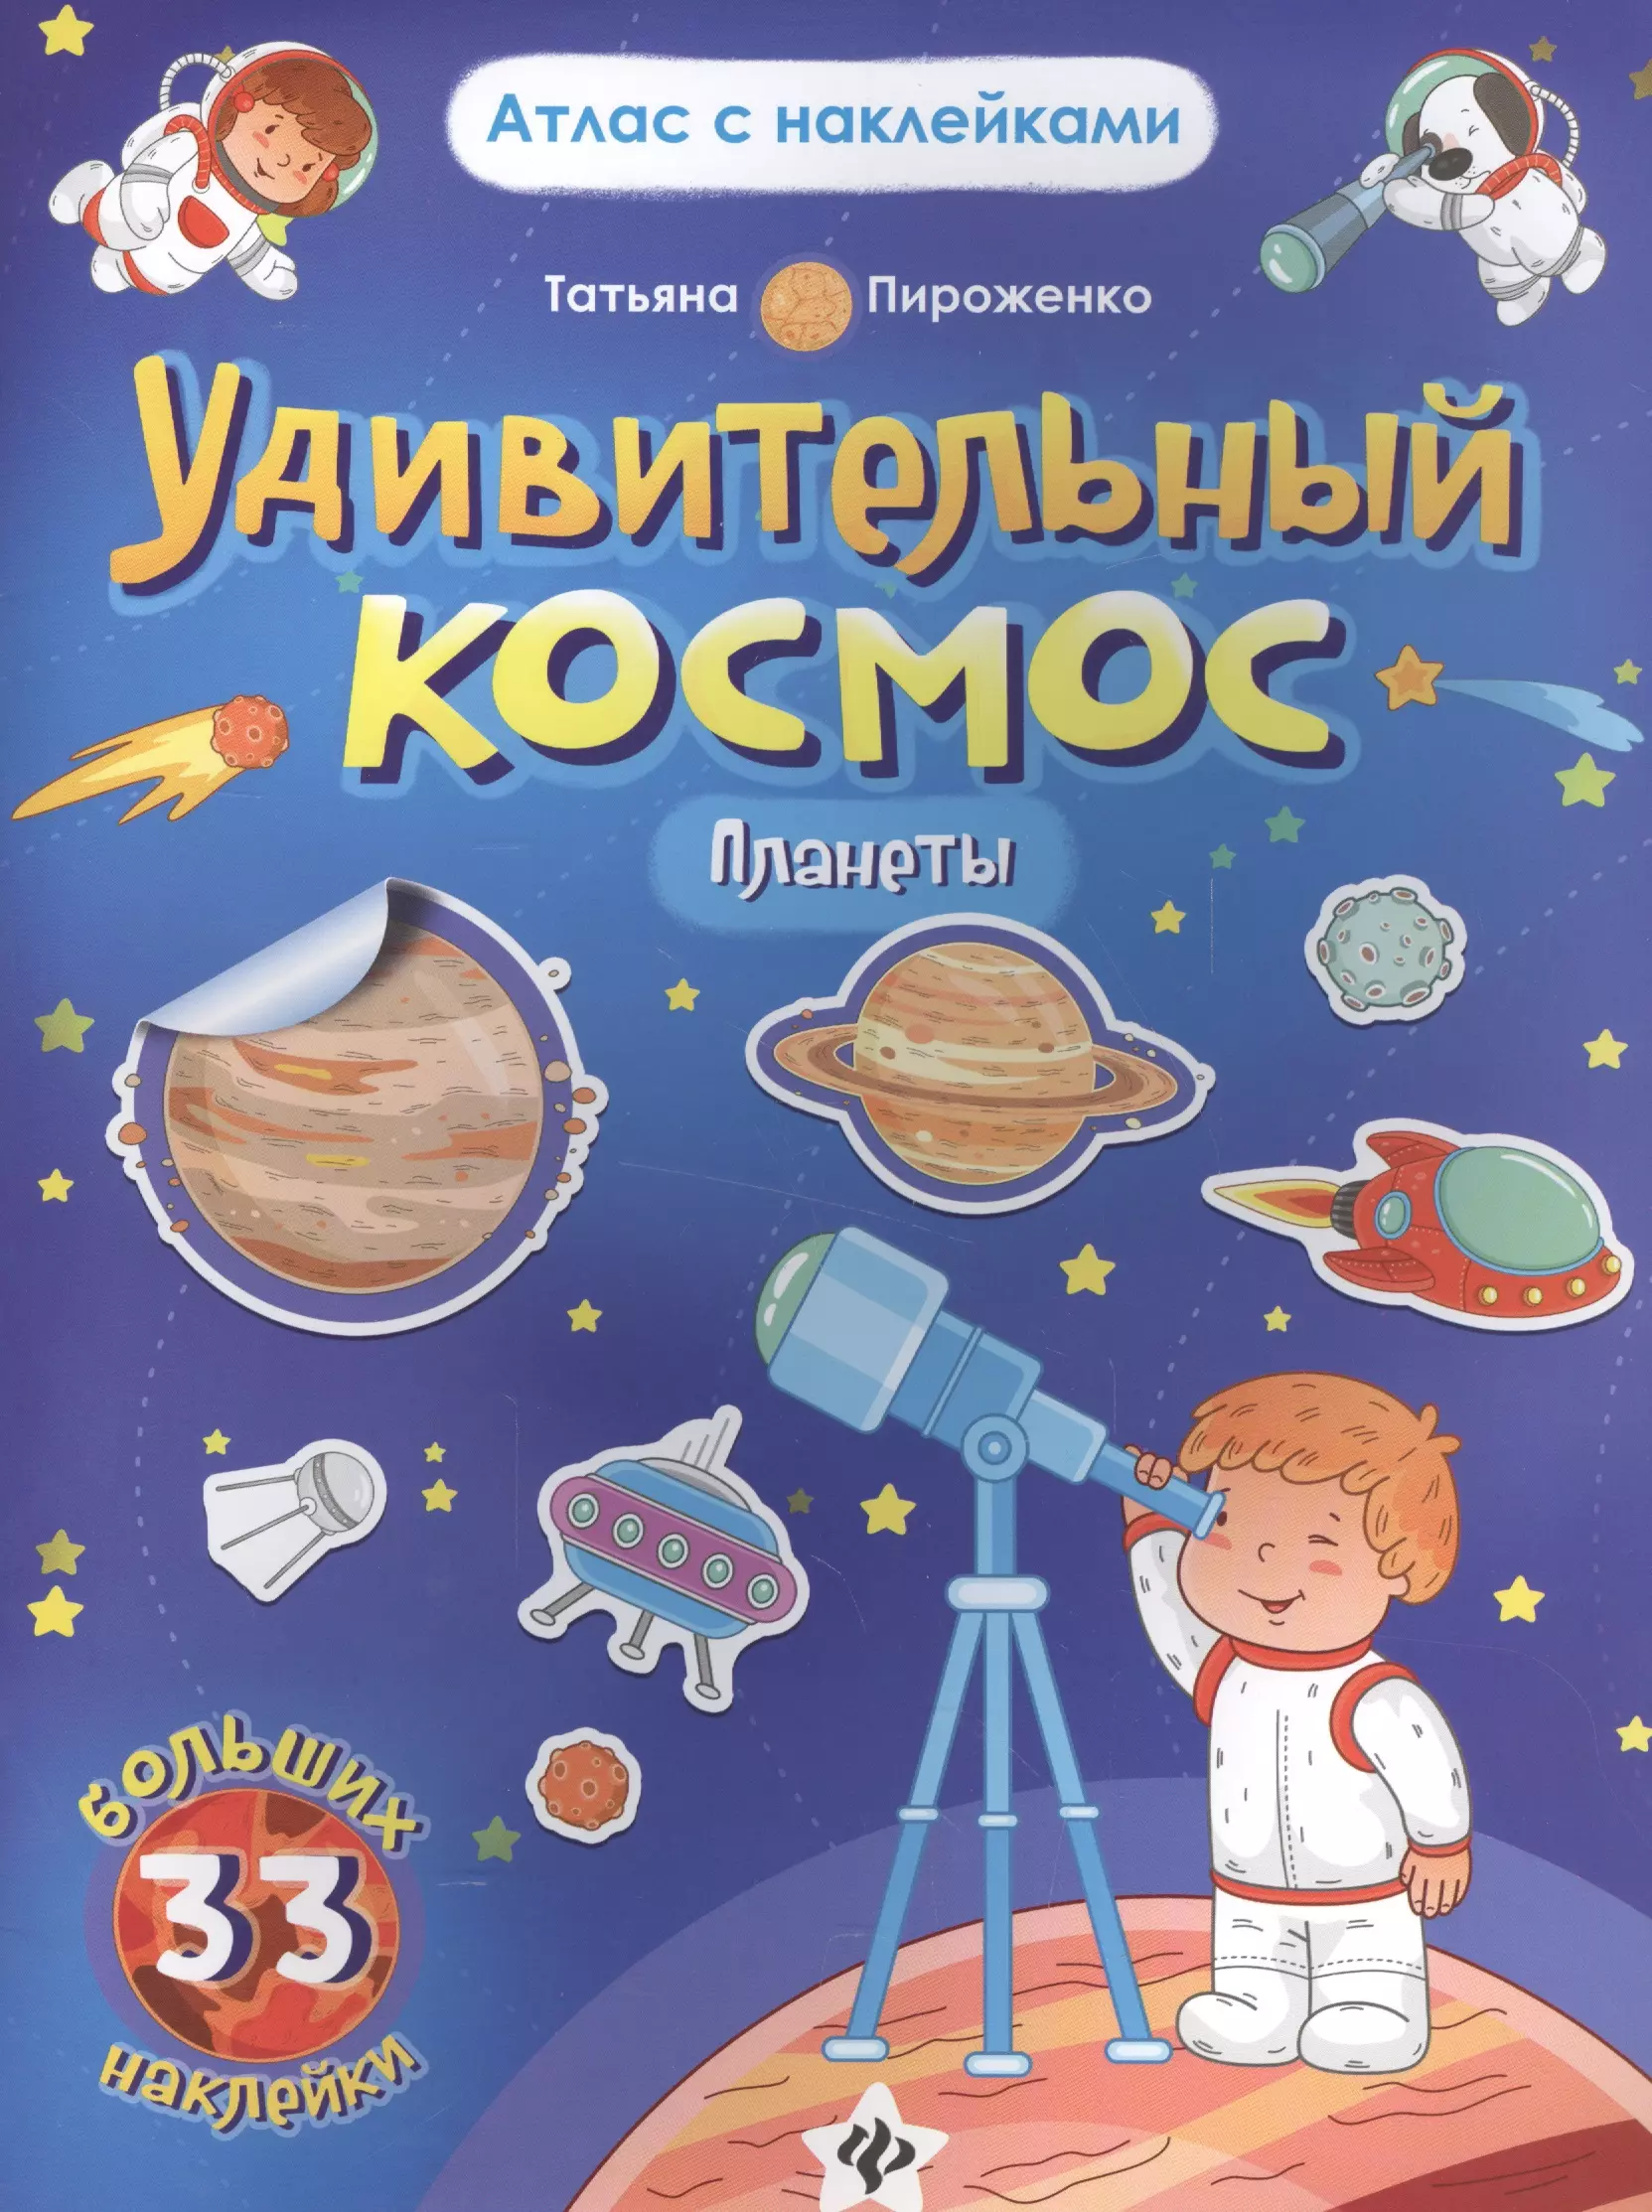 Книга планеты 5. Книги о космосе для детей. Детская книжка про космос. Детские книги про космос.